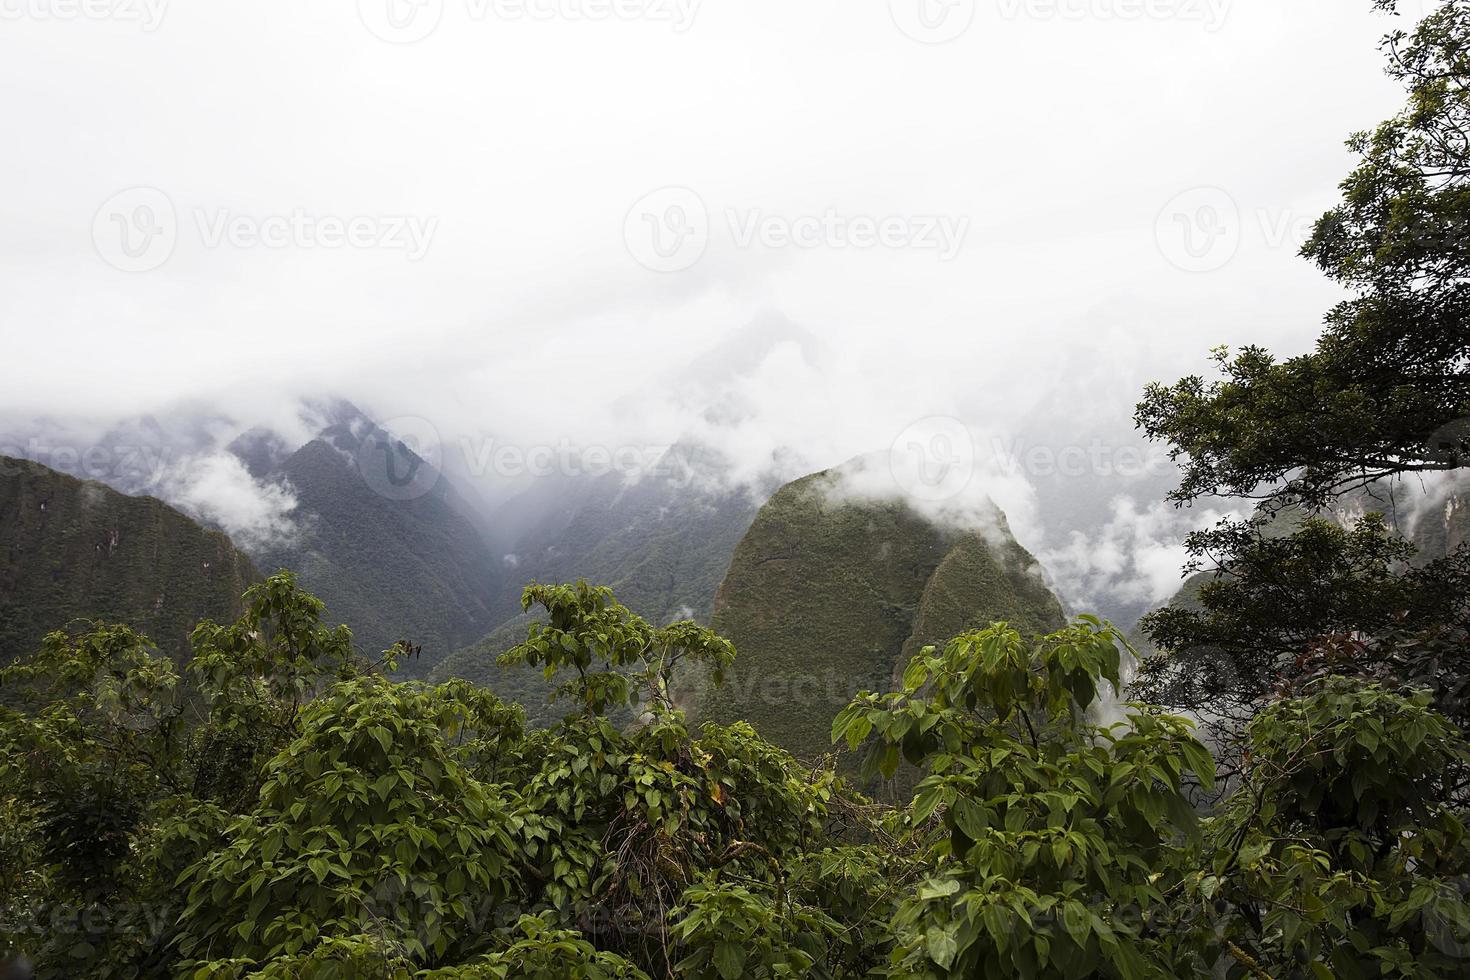 The wilderness in Peru photo